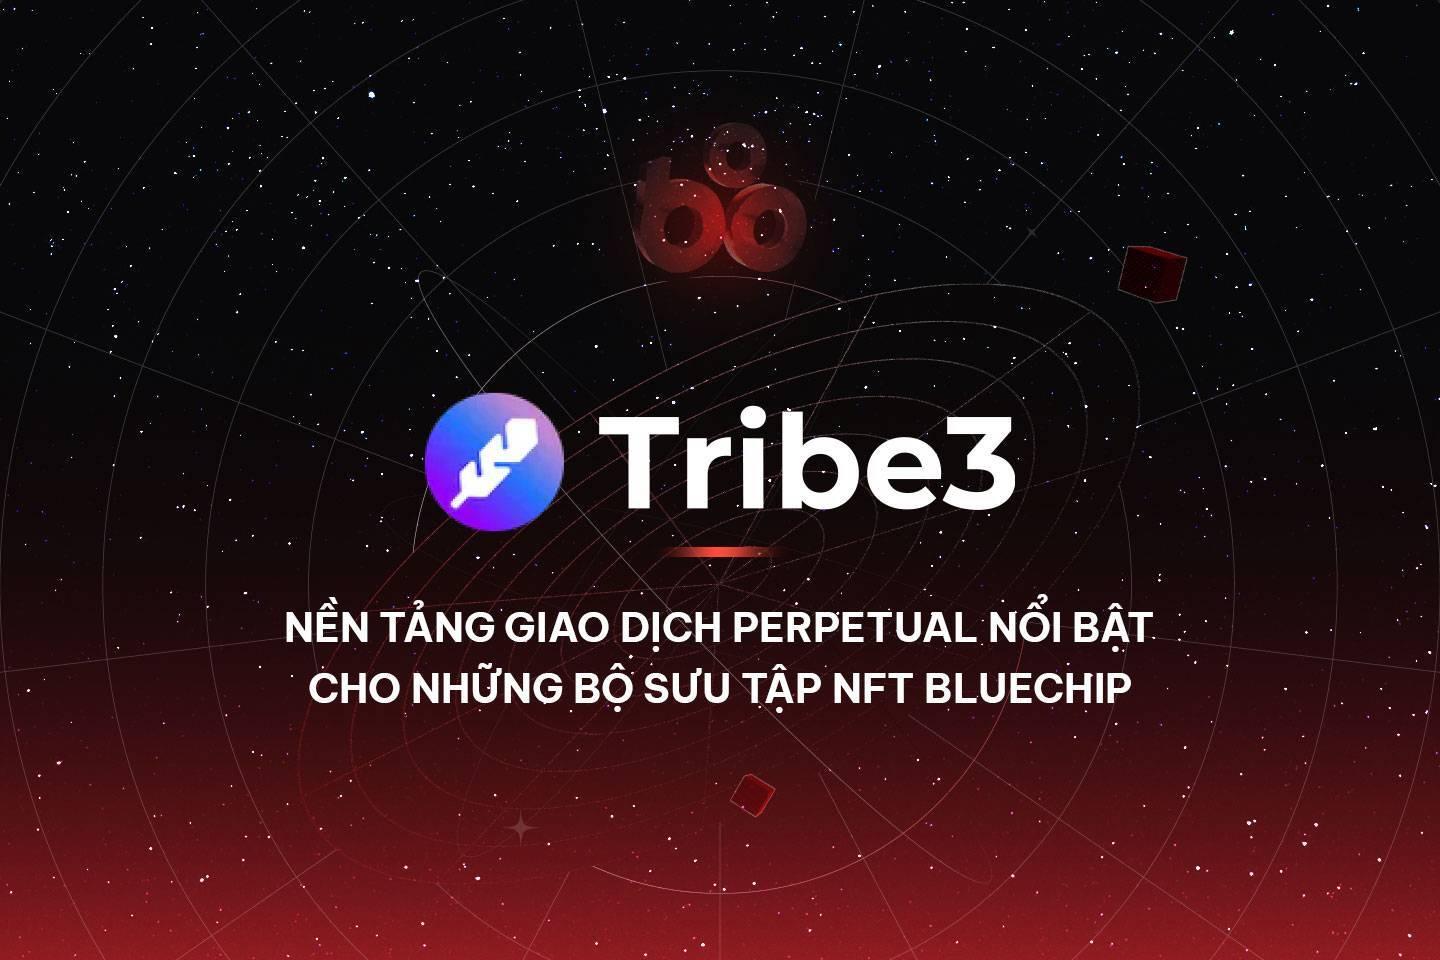 tribe3-nen-tang-giao-dich-perpetual-noi-bat-cho-nhung-bo-suu-tap-nft-bluechip